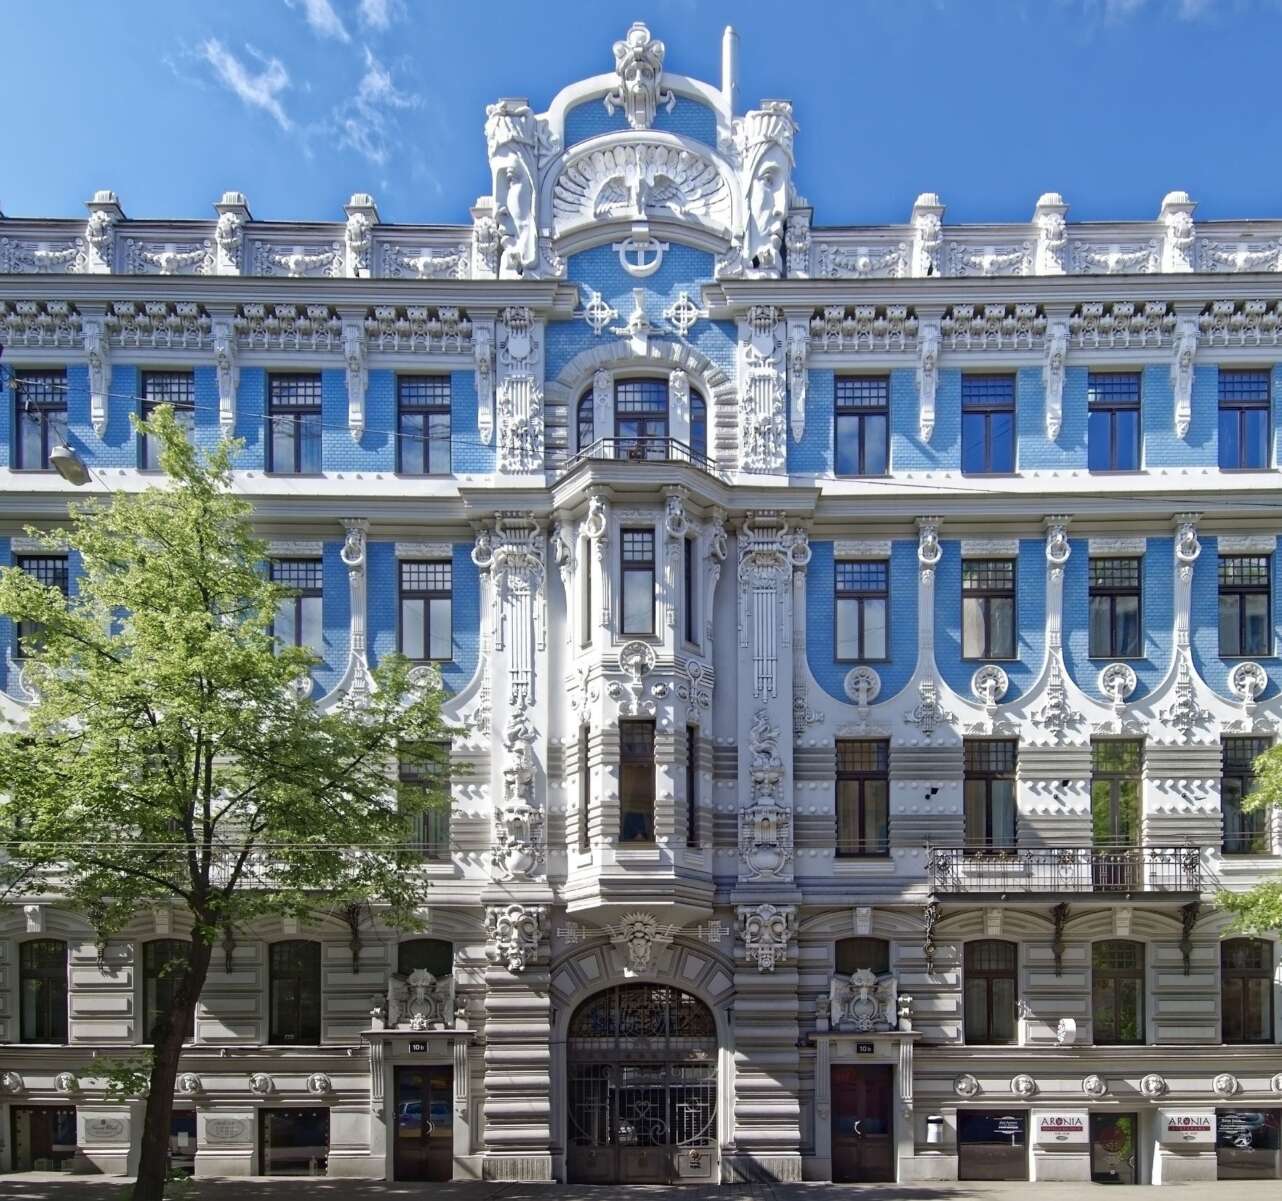 Las fachadas art nouveau son un espectÃ¡culo en Riga. Foto: Pixabay.